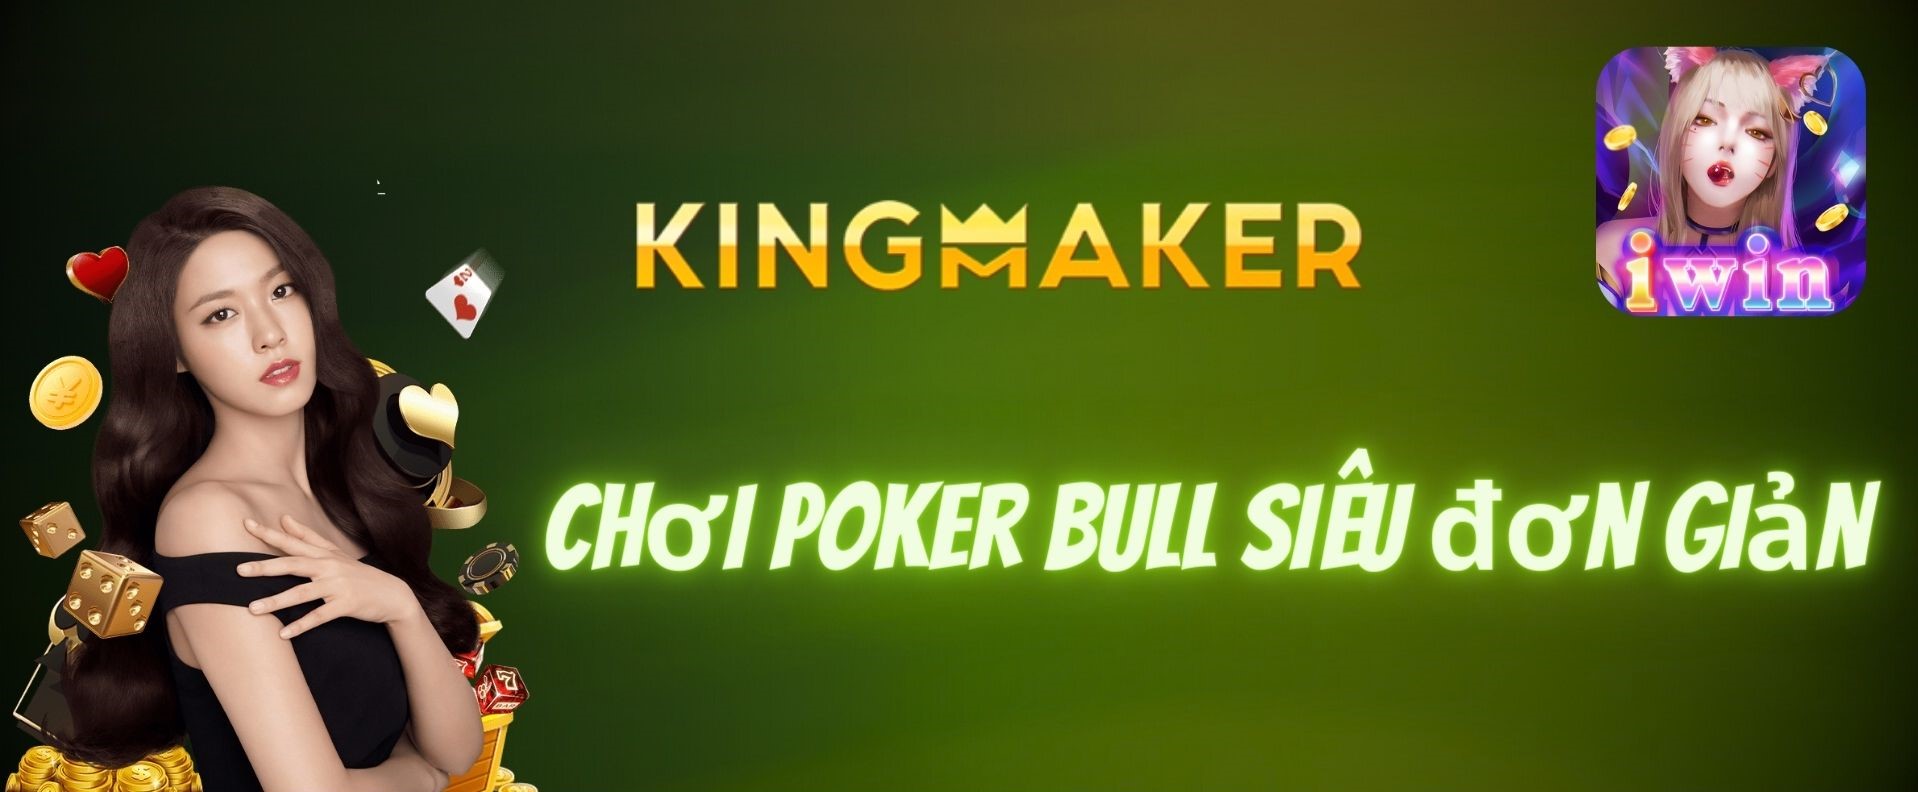 Thông tin về game bài Poker Bull tại IWIN